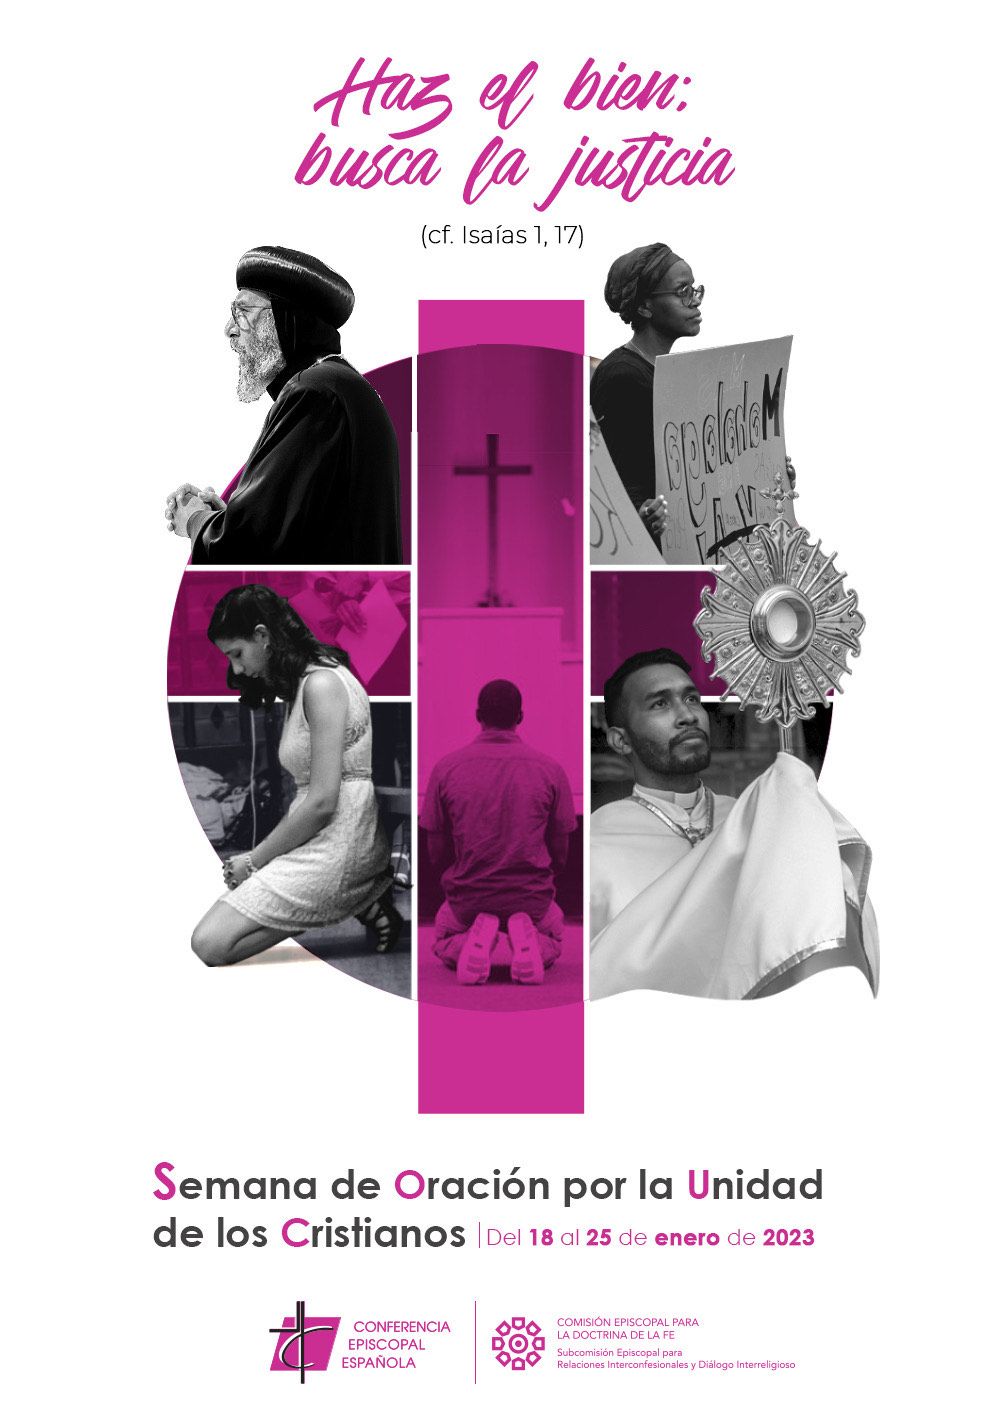 Cartel-en-castellano-para-la-Semana-de-Oracion-por-la-Unidad-de-los-Cristianos-2023